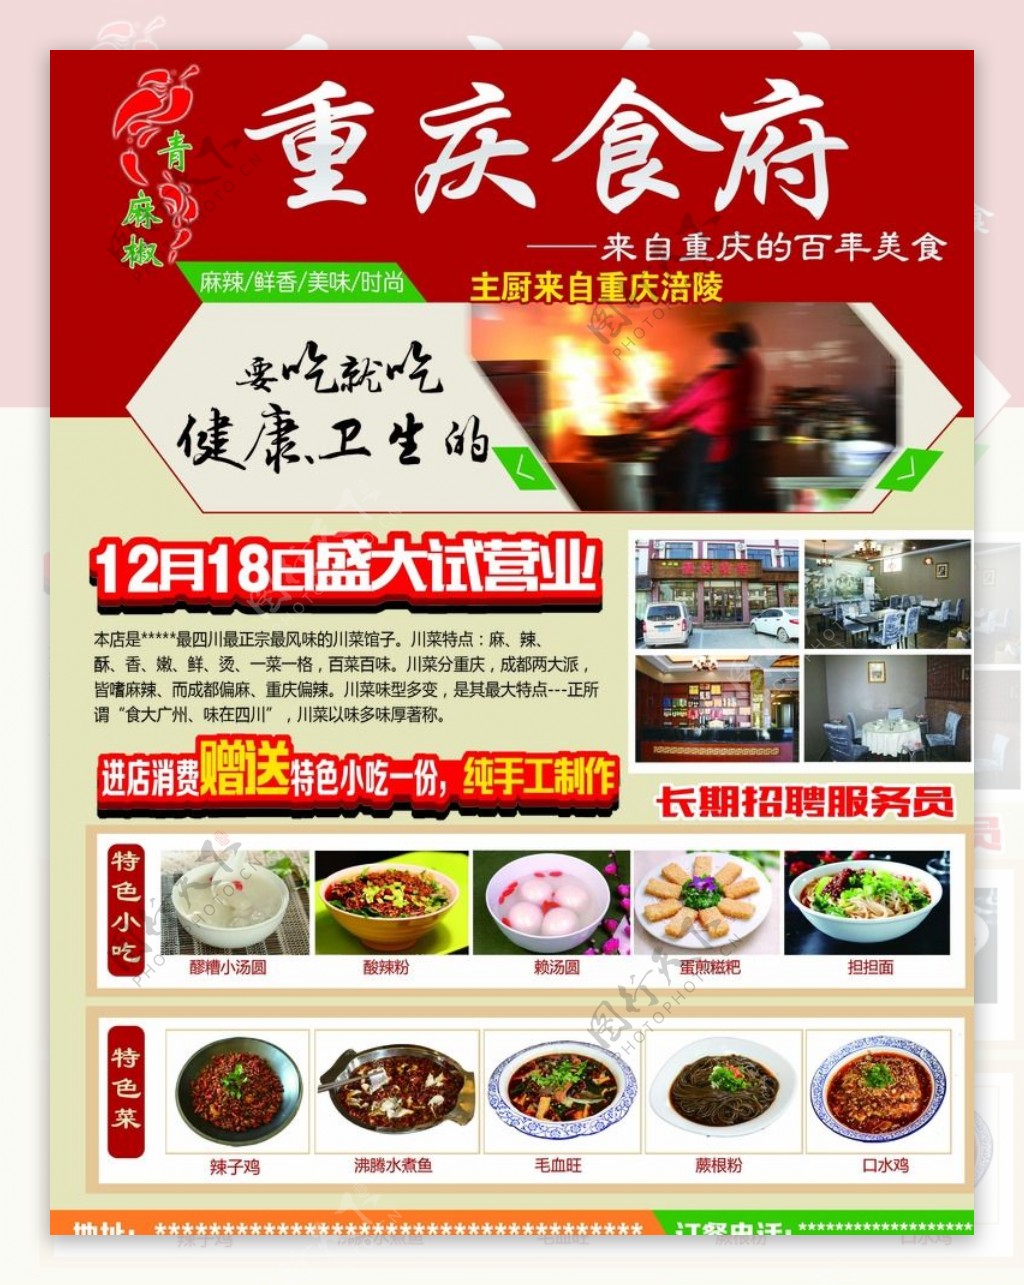 重庆食府开业海报